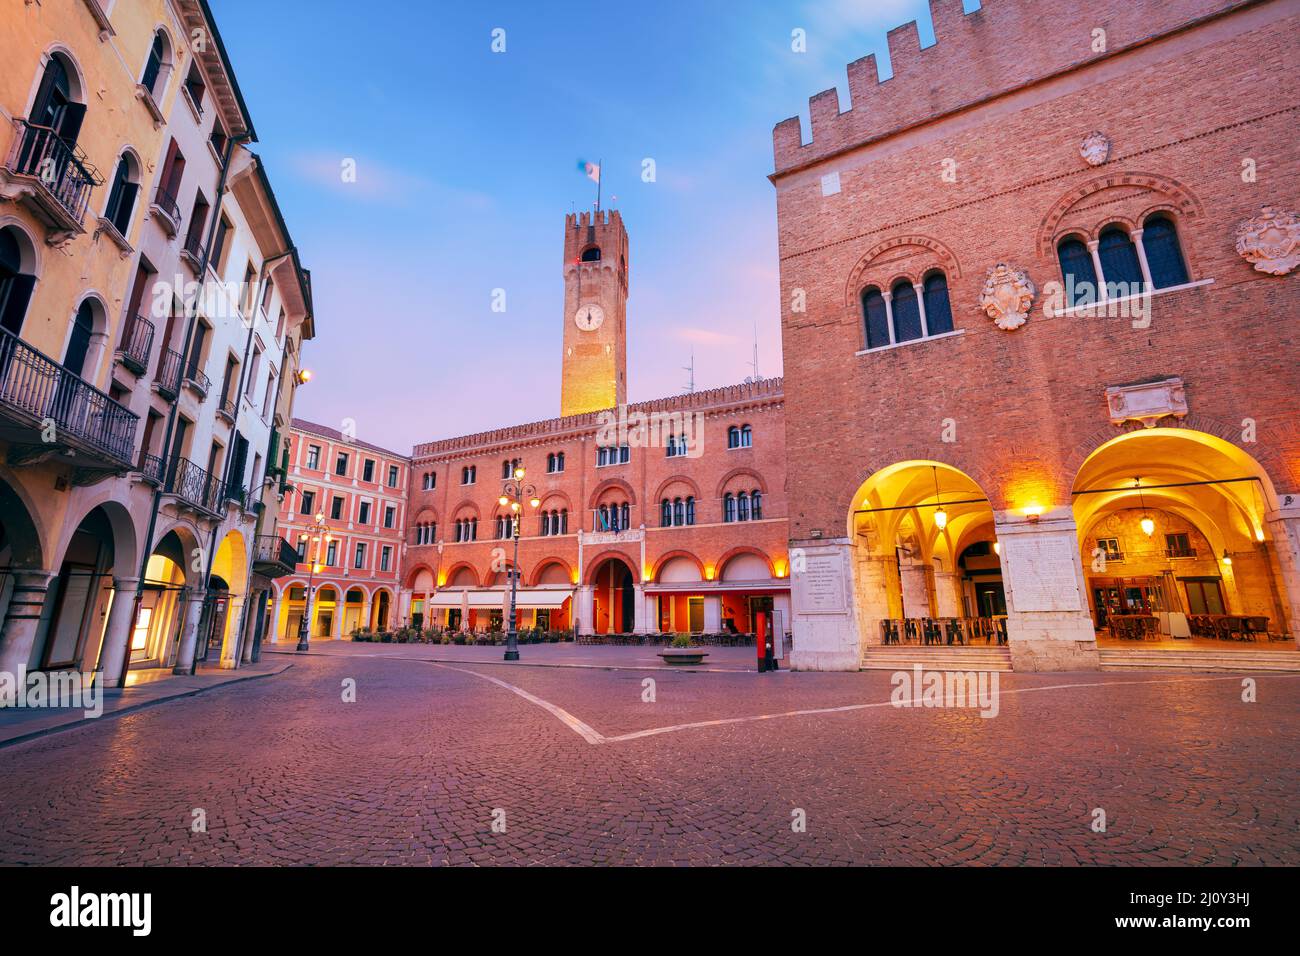 Treviso, Italien. Stadtbild des historischen Zentrums von Treviso, Italien mit altem Platz bei Sonnenaufgang. Stockfoto